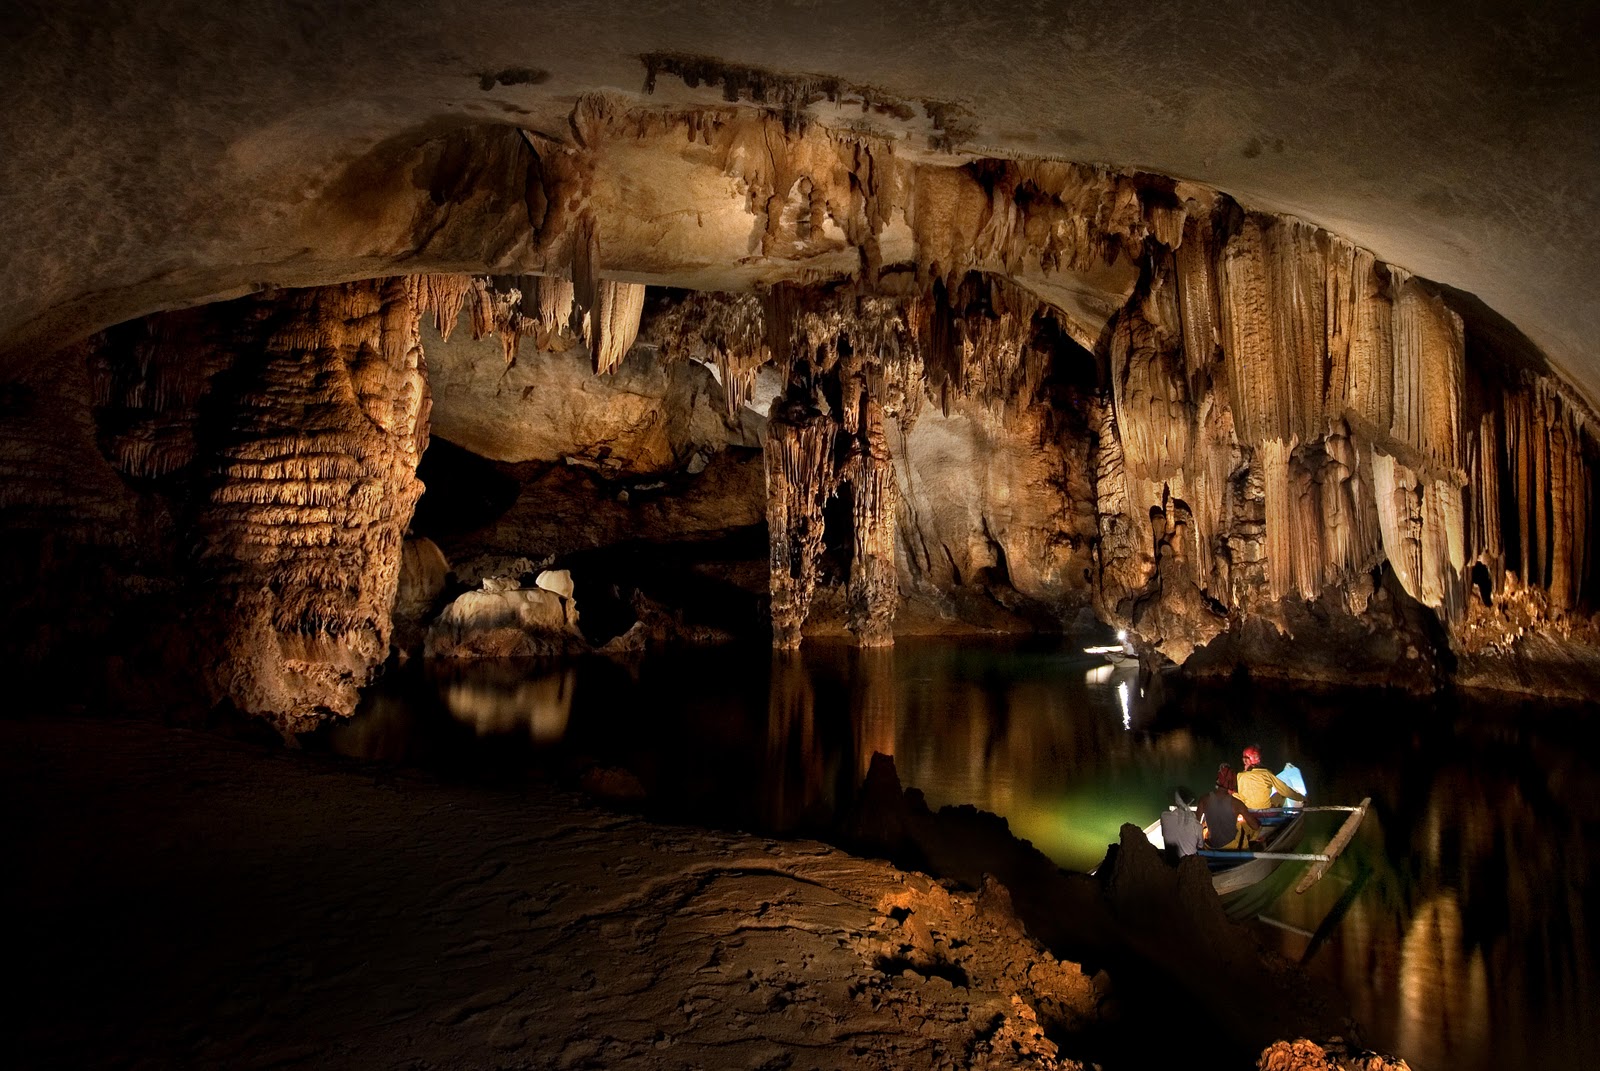 Cave v. Подземная река Пуэрто-Принсеса. Подземная река Пуэрто-принцесса, Филиппины. Подземная река Пуэрто-Принсеса (Puerto Princesa). Национальный парк подземной реки Пуэрто-Принсеса.